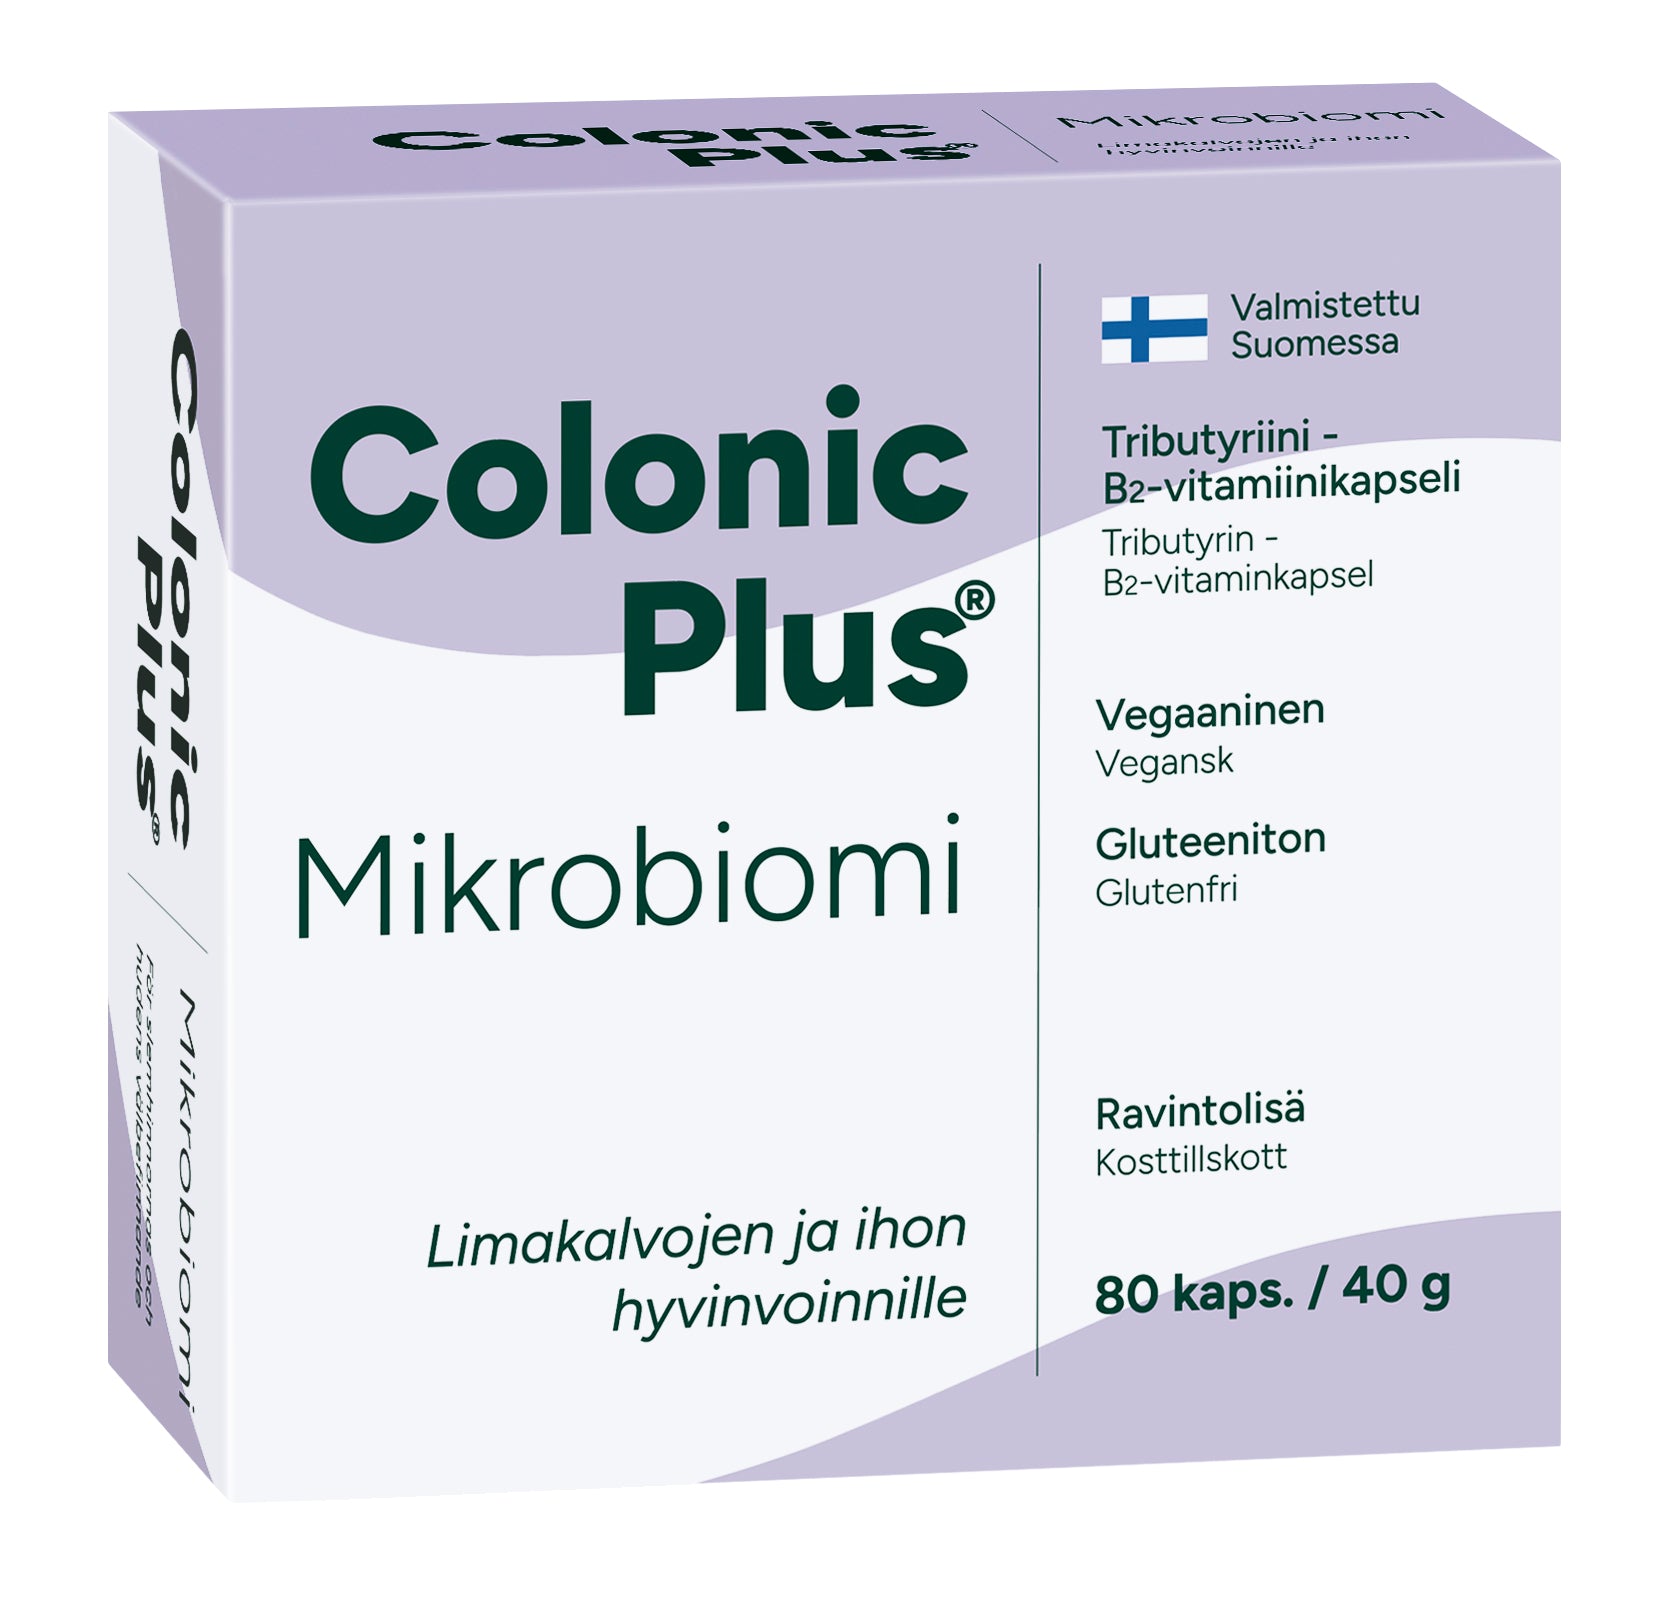 Colonic Plus® Mikrobiomi 80 kaps.